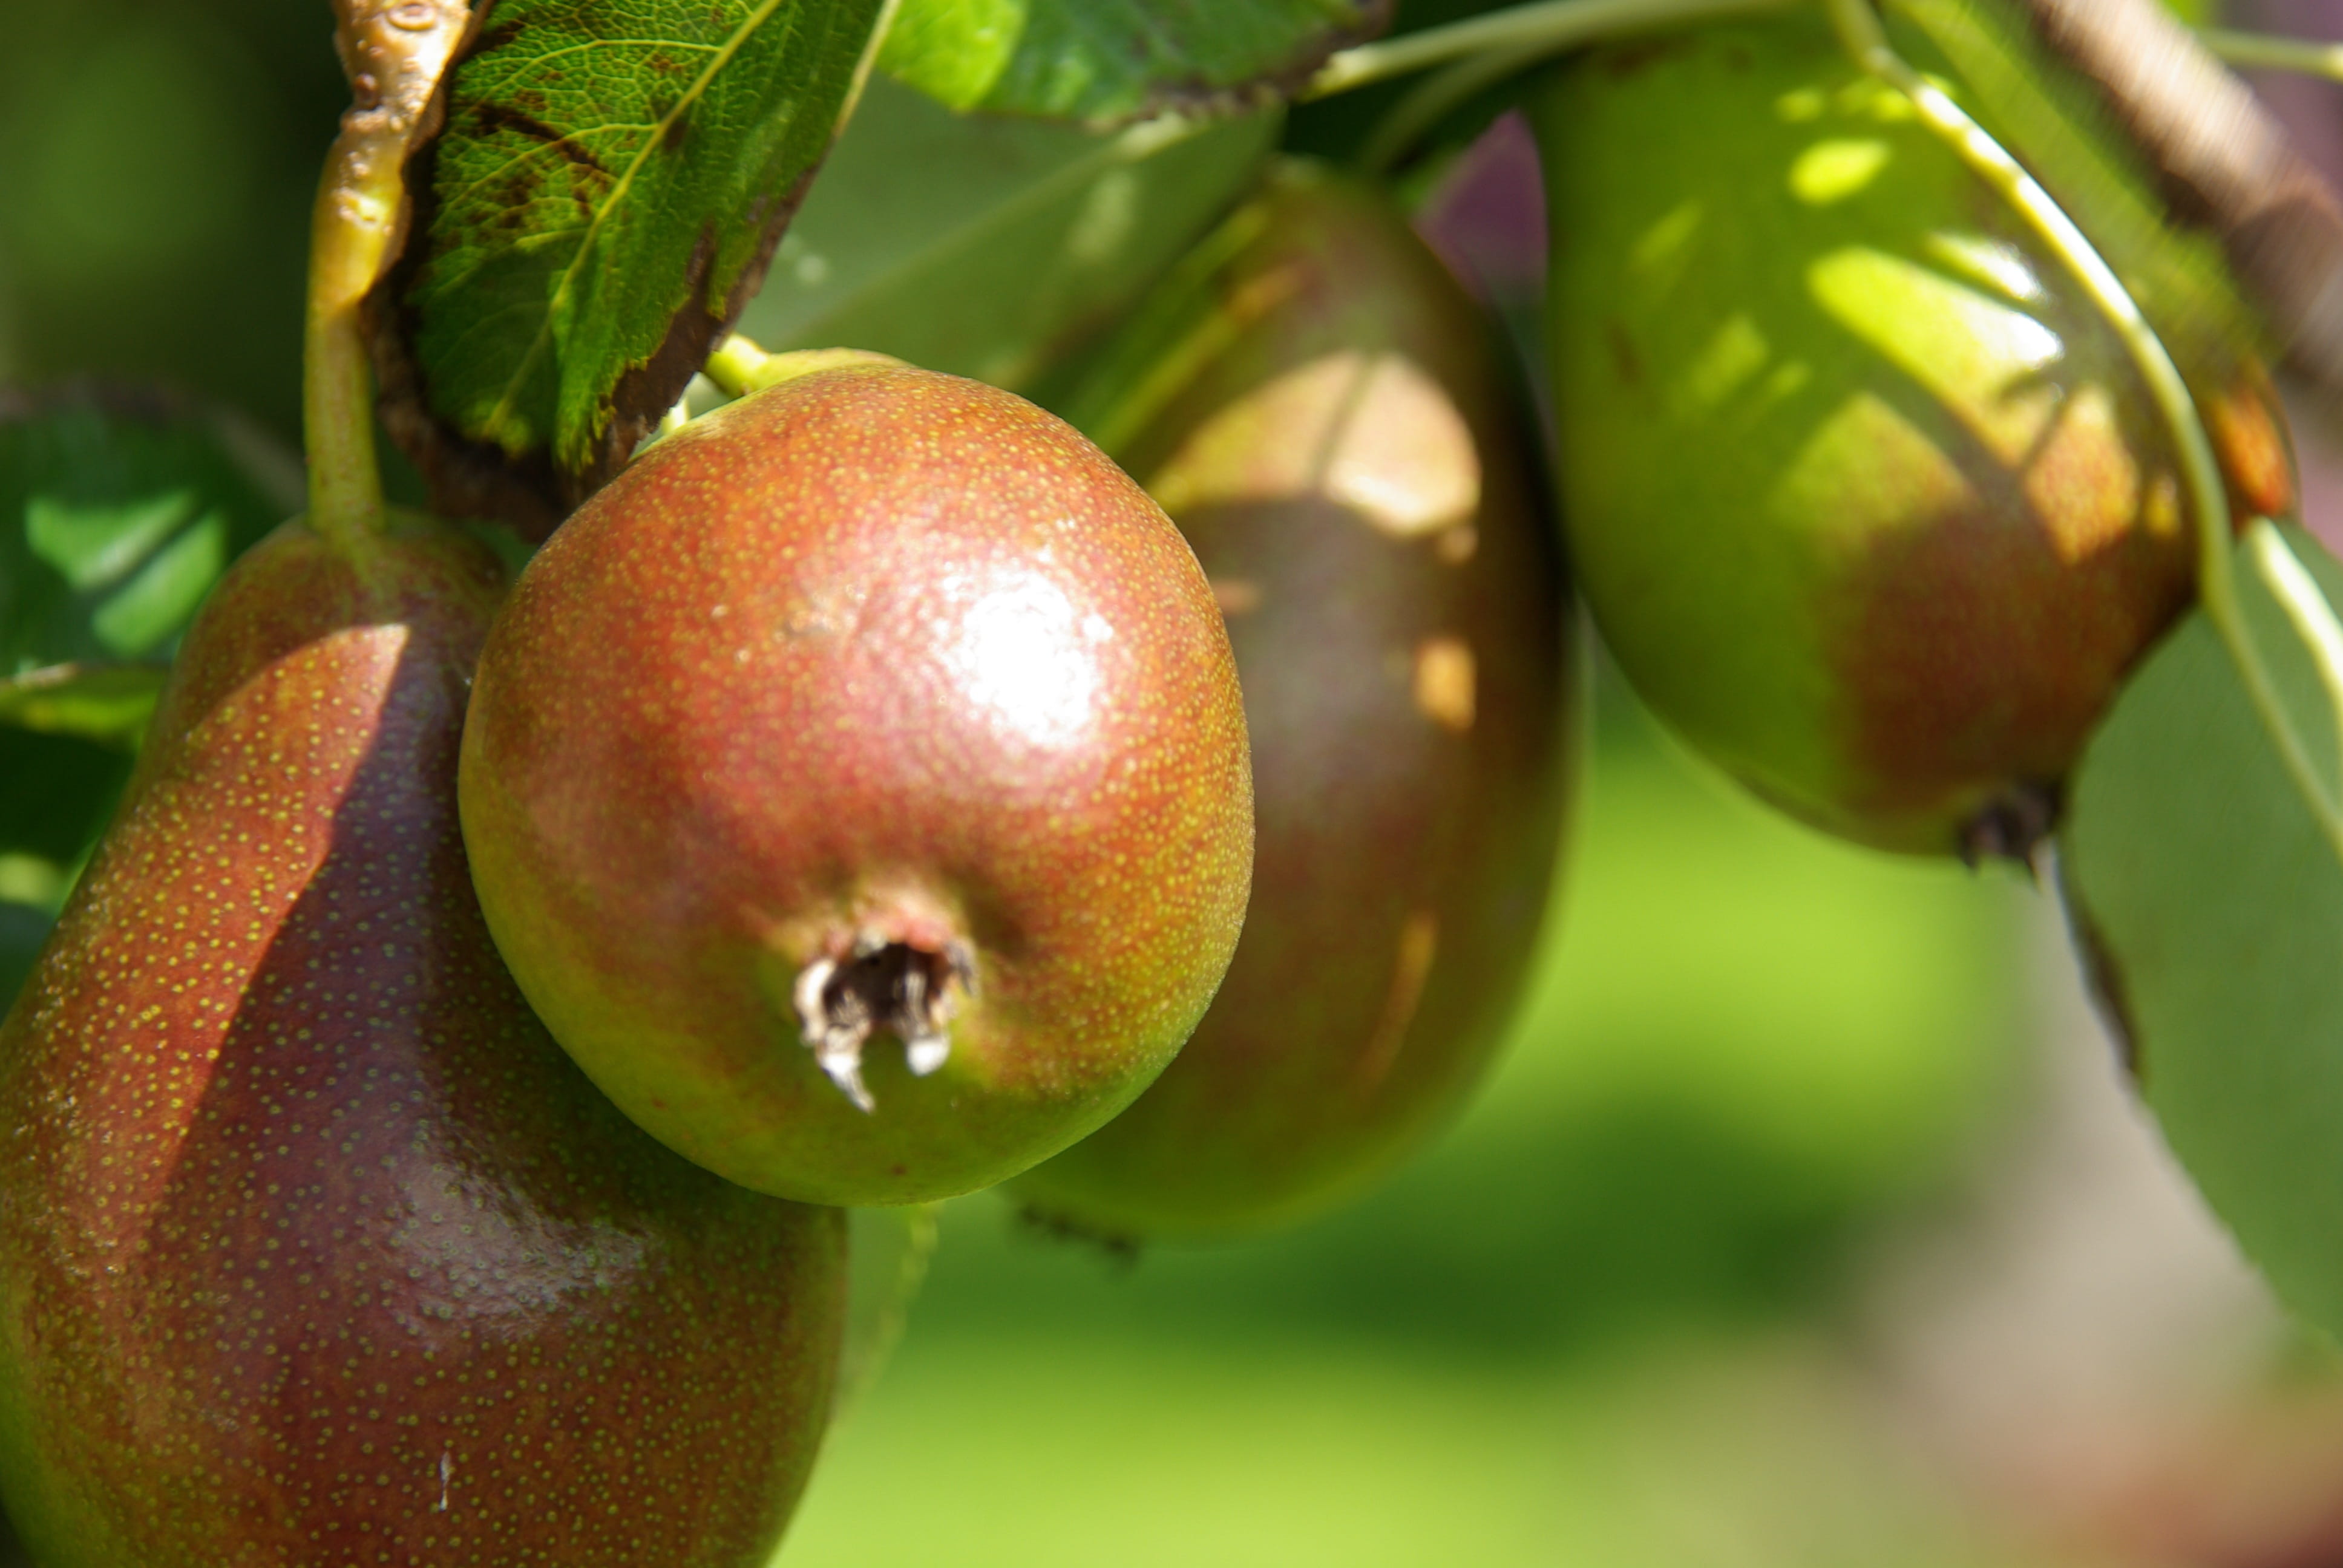 pears, peer, orchard, pear tree, fruit, fruits, food, fruit tree